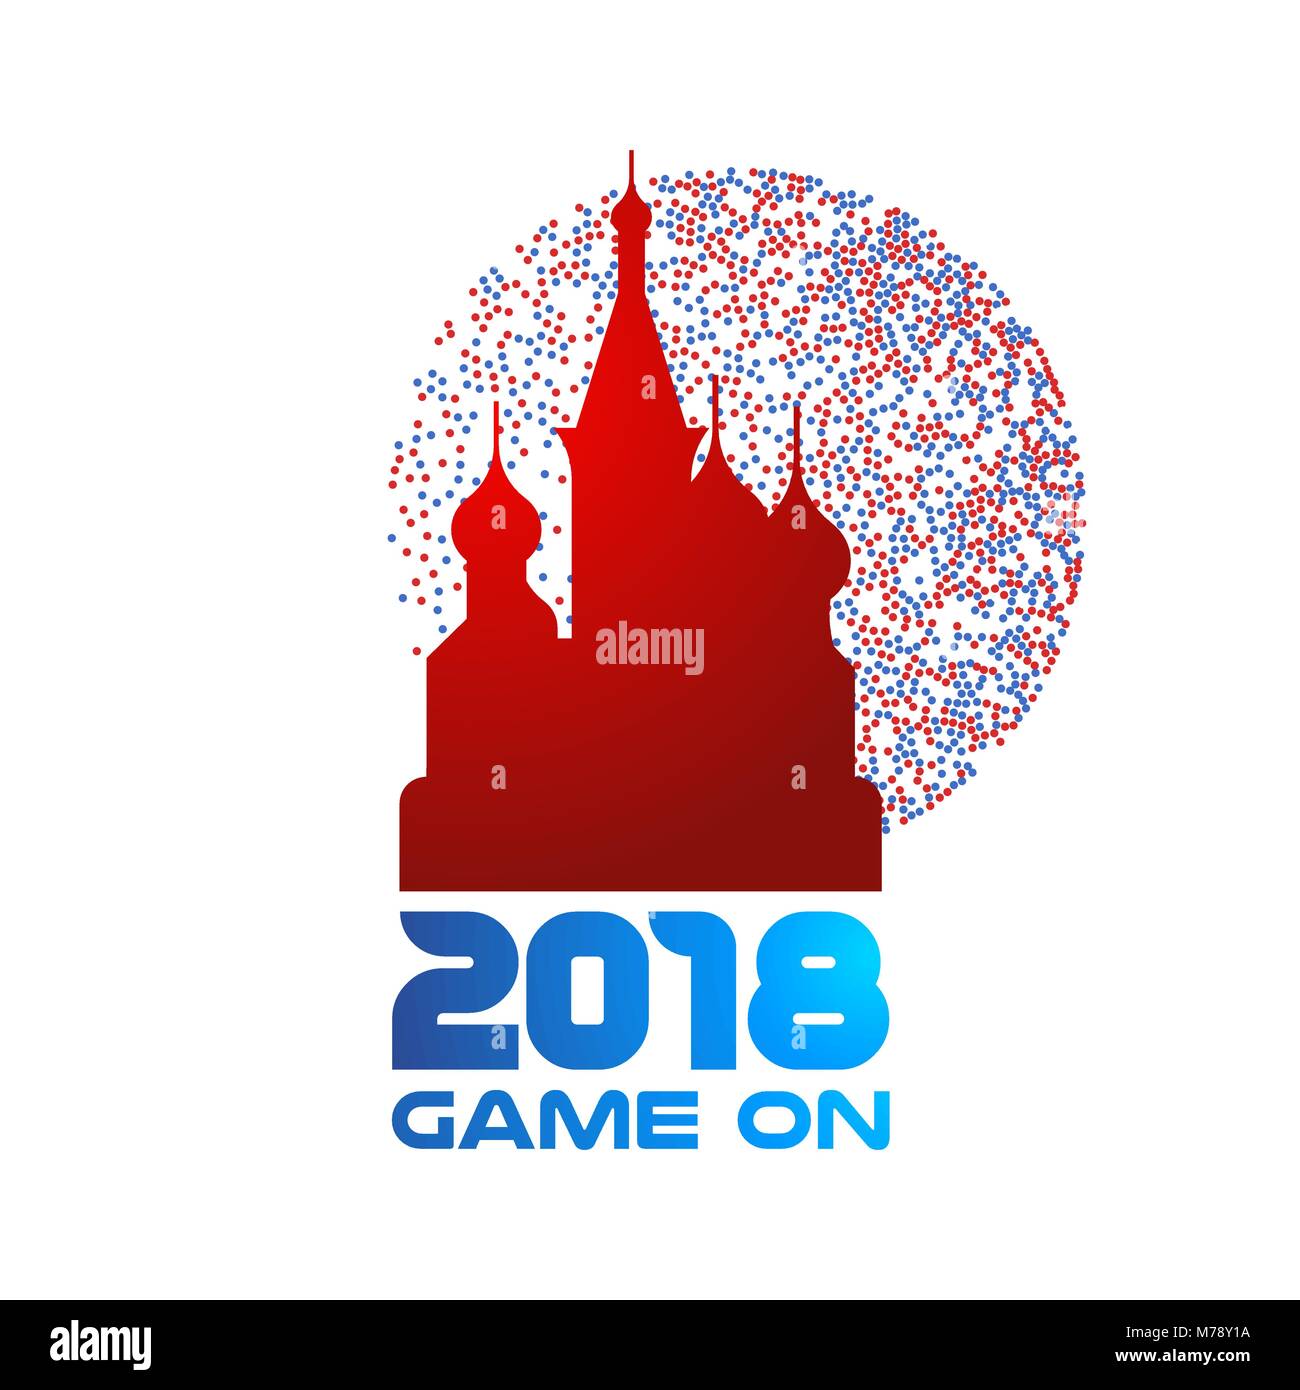 Berühmte russische Kathedrale Wahrzeichen mit Typografie 2018 Zitat und bunten Hintergrund Dekoration. Ideal für die Veranstaltung in Russland oder Tourismus Poster. EPS 10 ve Stock Vektor